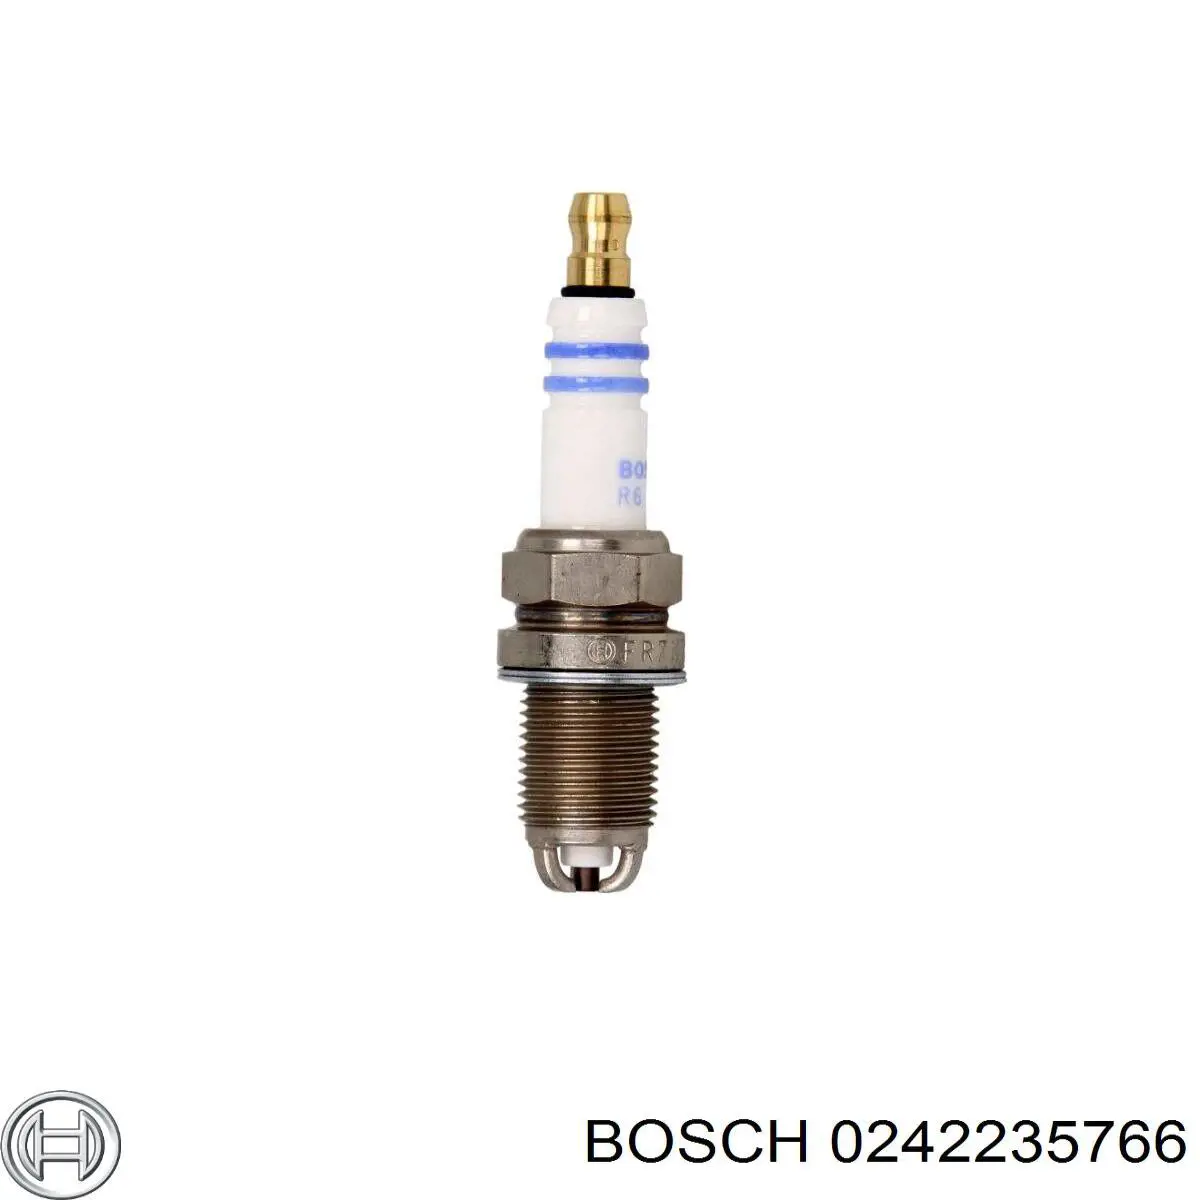 0242235766 Bosch bujía